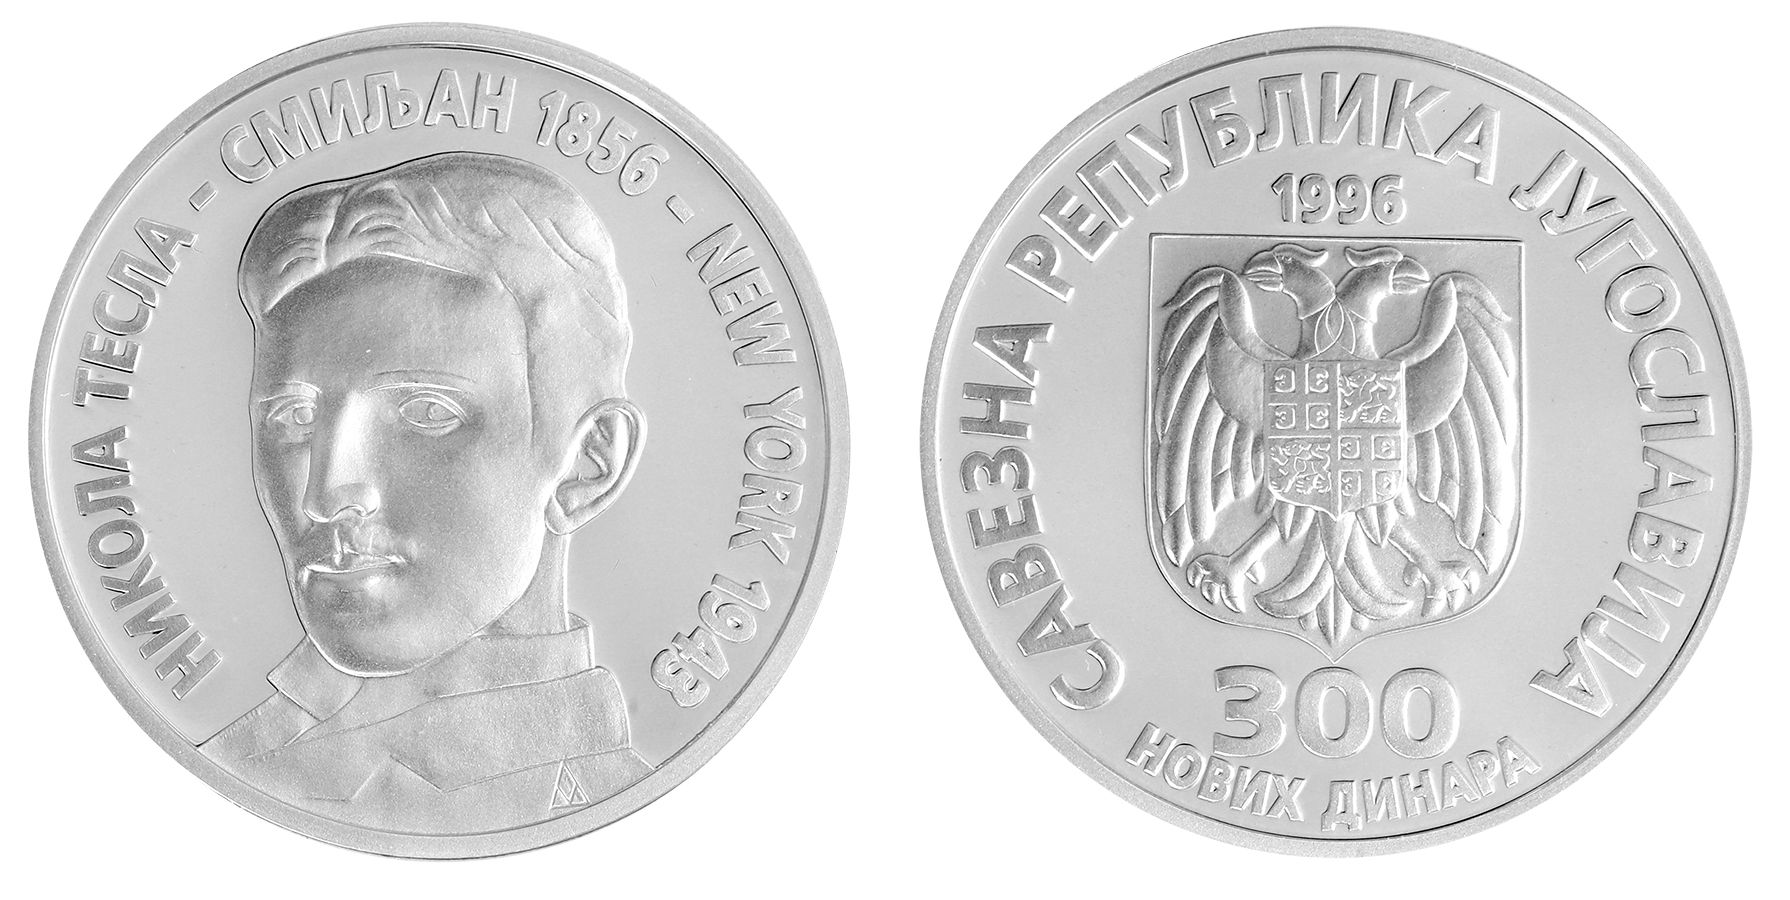 Yugoslavia 300 Dinara, 26 g Silver Proof Coin, 1996, KM ...